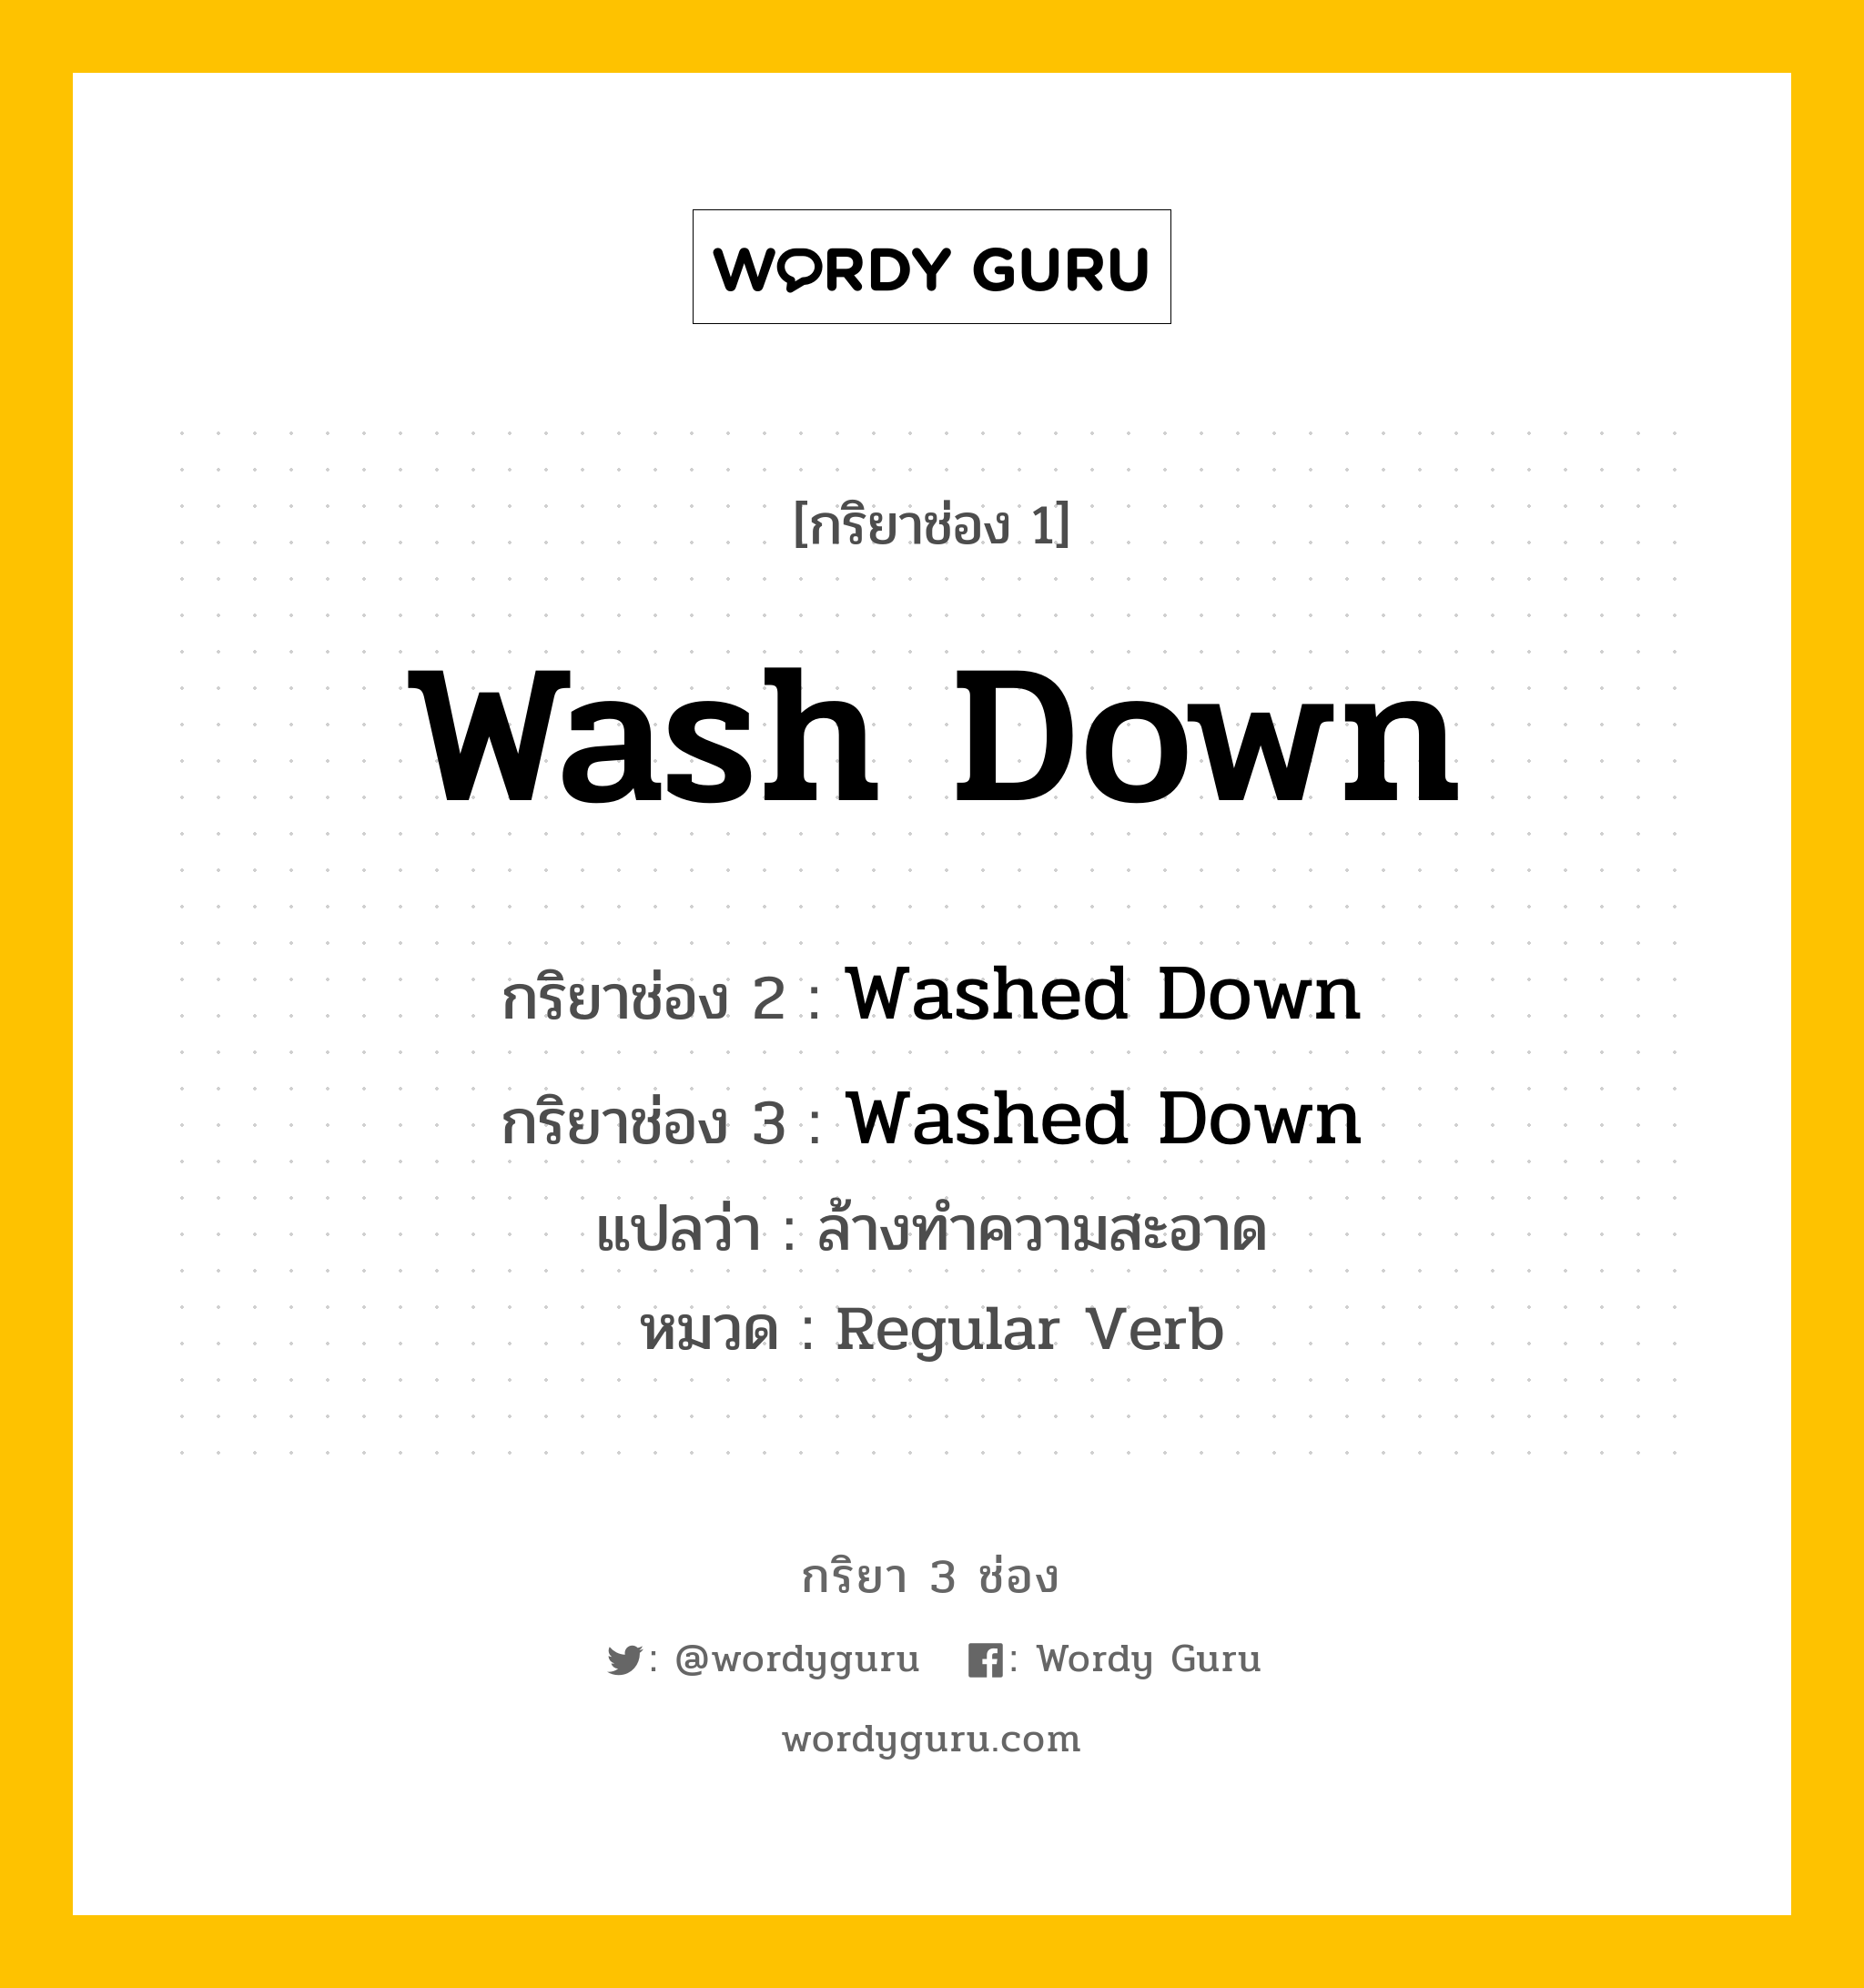 กริยา 3 ช่อง ของ Wash Down คืออะไร? มาดูคำอ่าน คำแปลกันเลย, กริยาช่อง 1 Wash Down กริยาช่อง 2 Washed Down กริยาช่อง 3 Washed Down แปลว่า ล้างทำความสะอาด หมวด Regular Verb หมวด Regular Verb